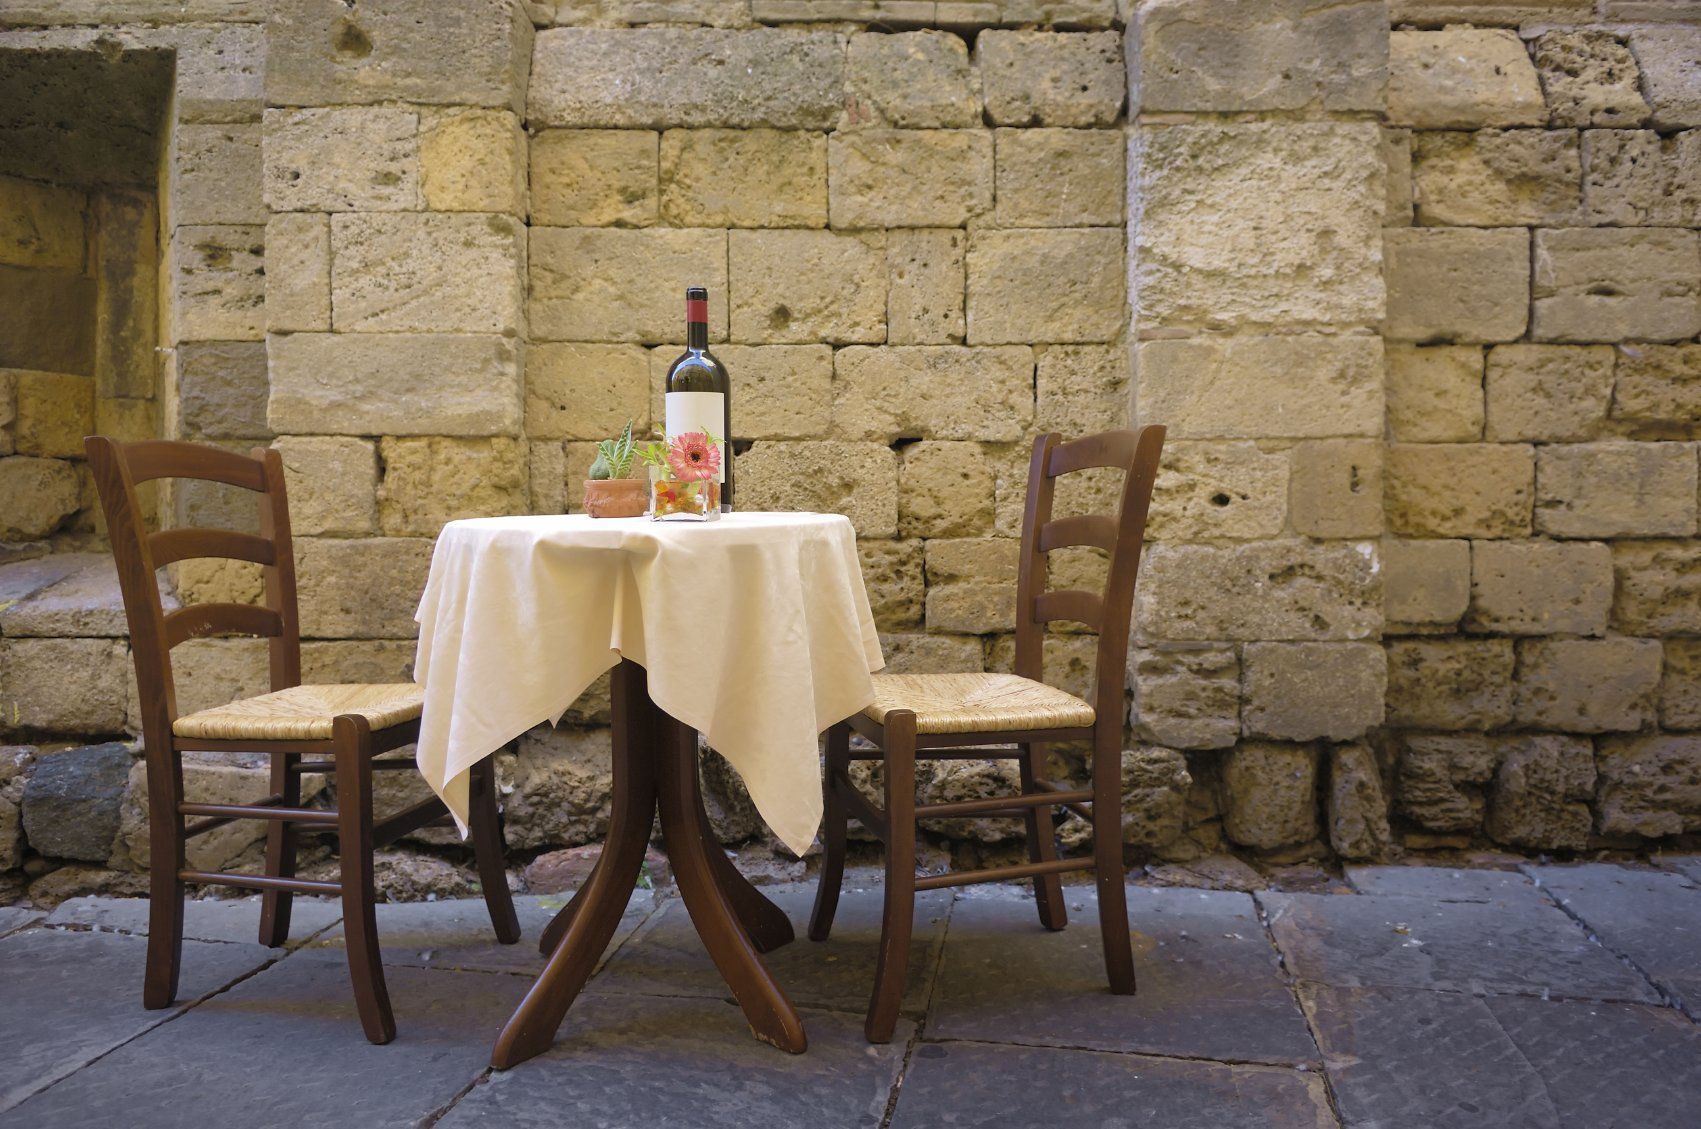 Tisch mit Wein und Blumen und zwei Stühlen